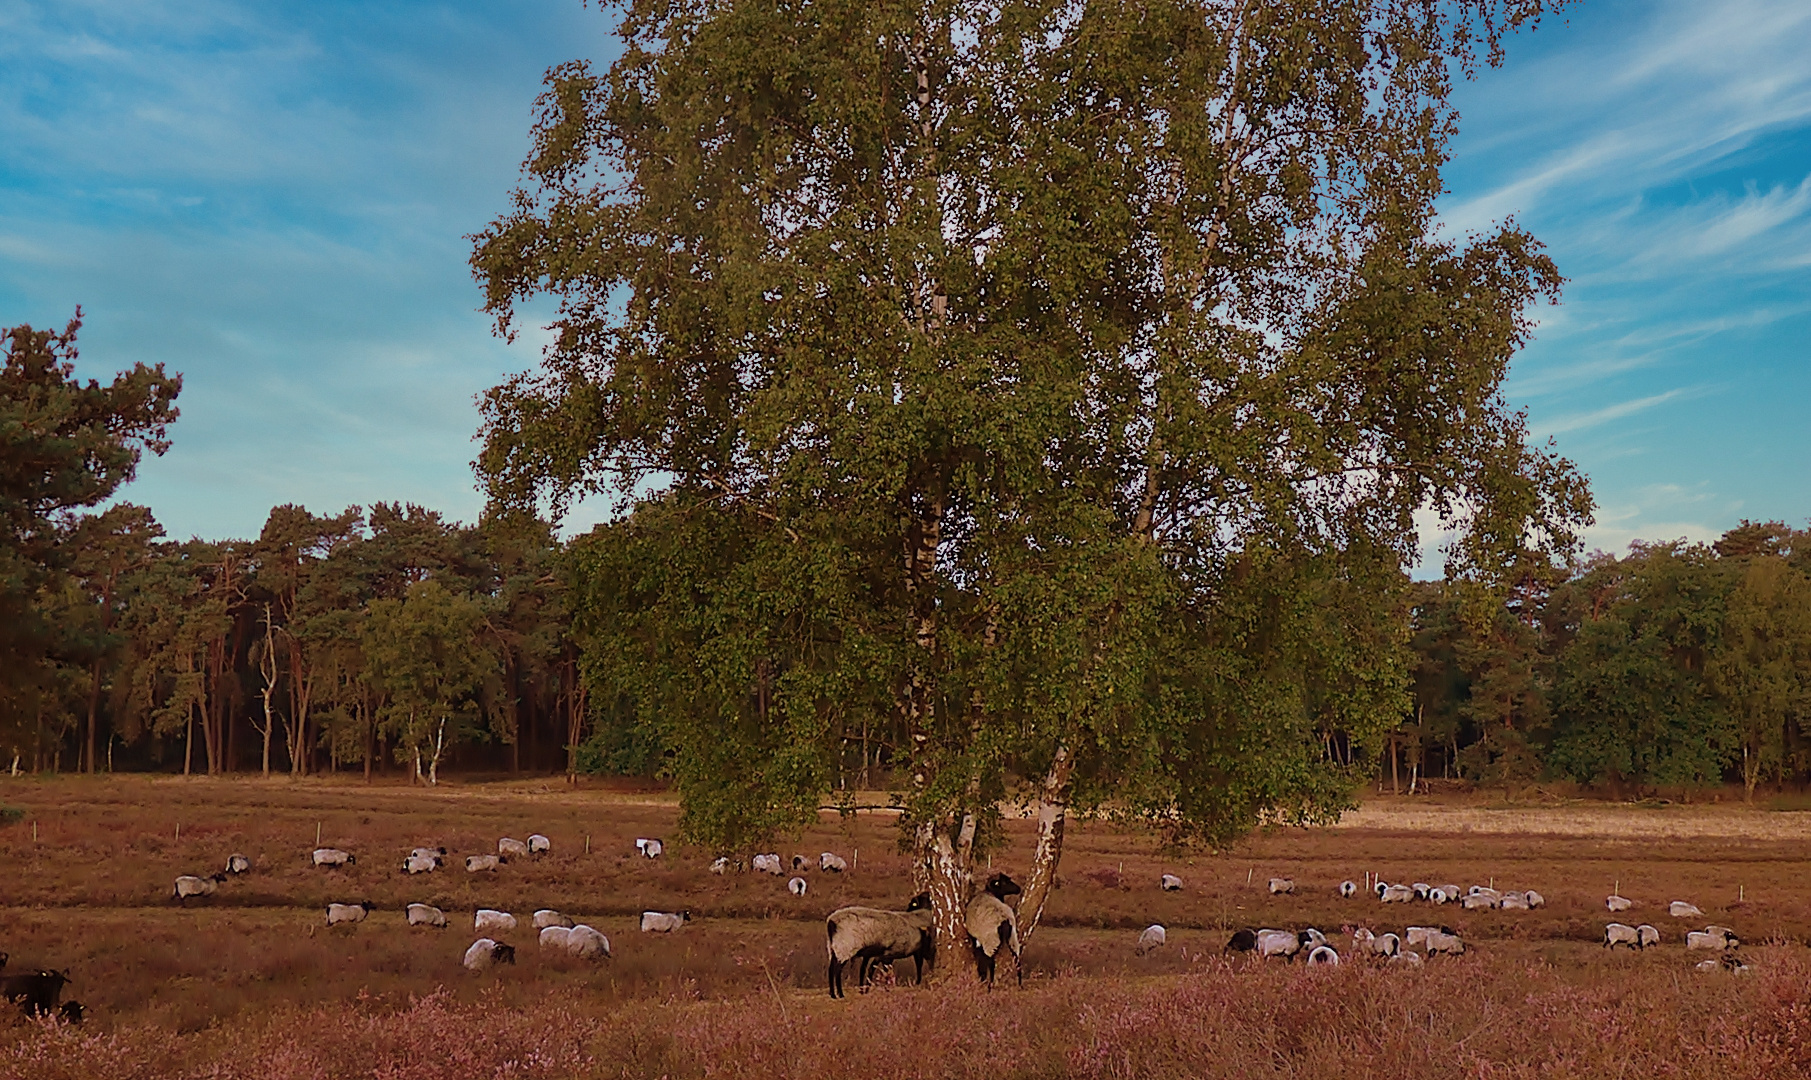 Die Schafe in der Westruper Heide . . .